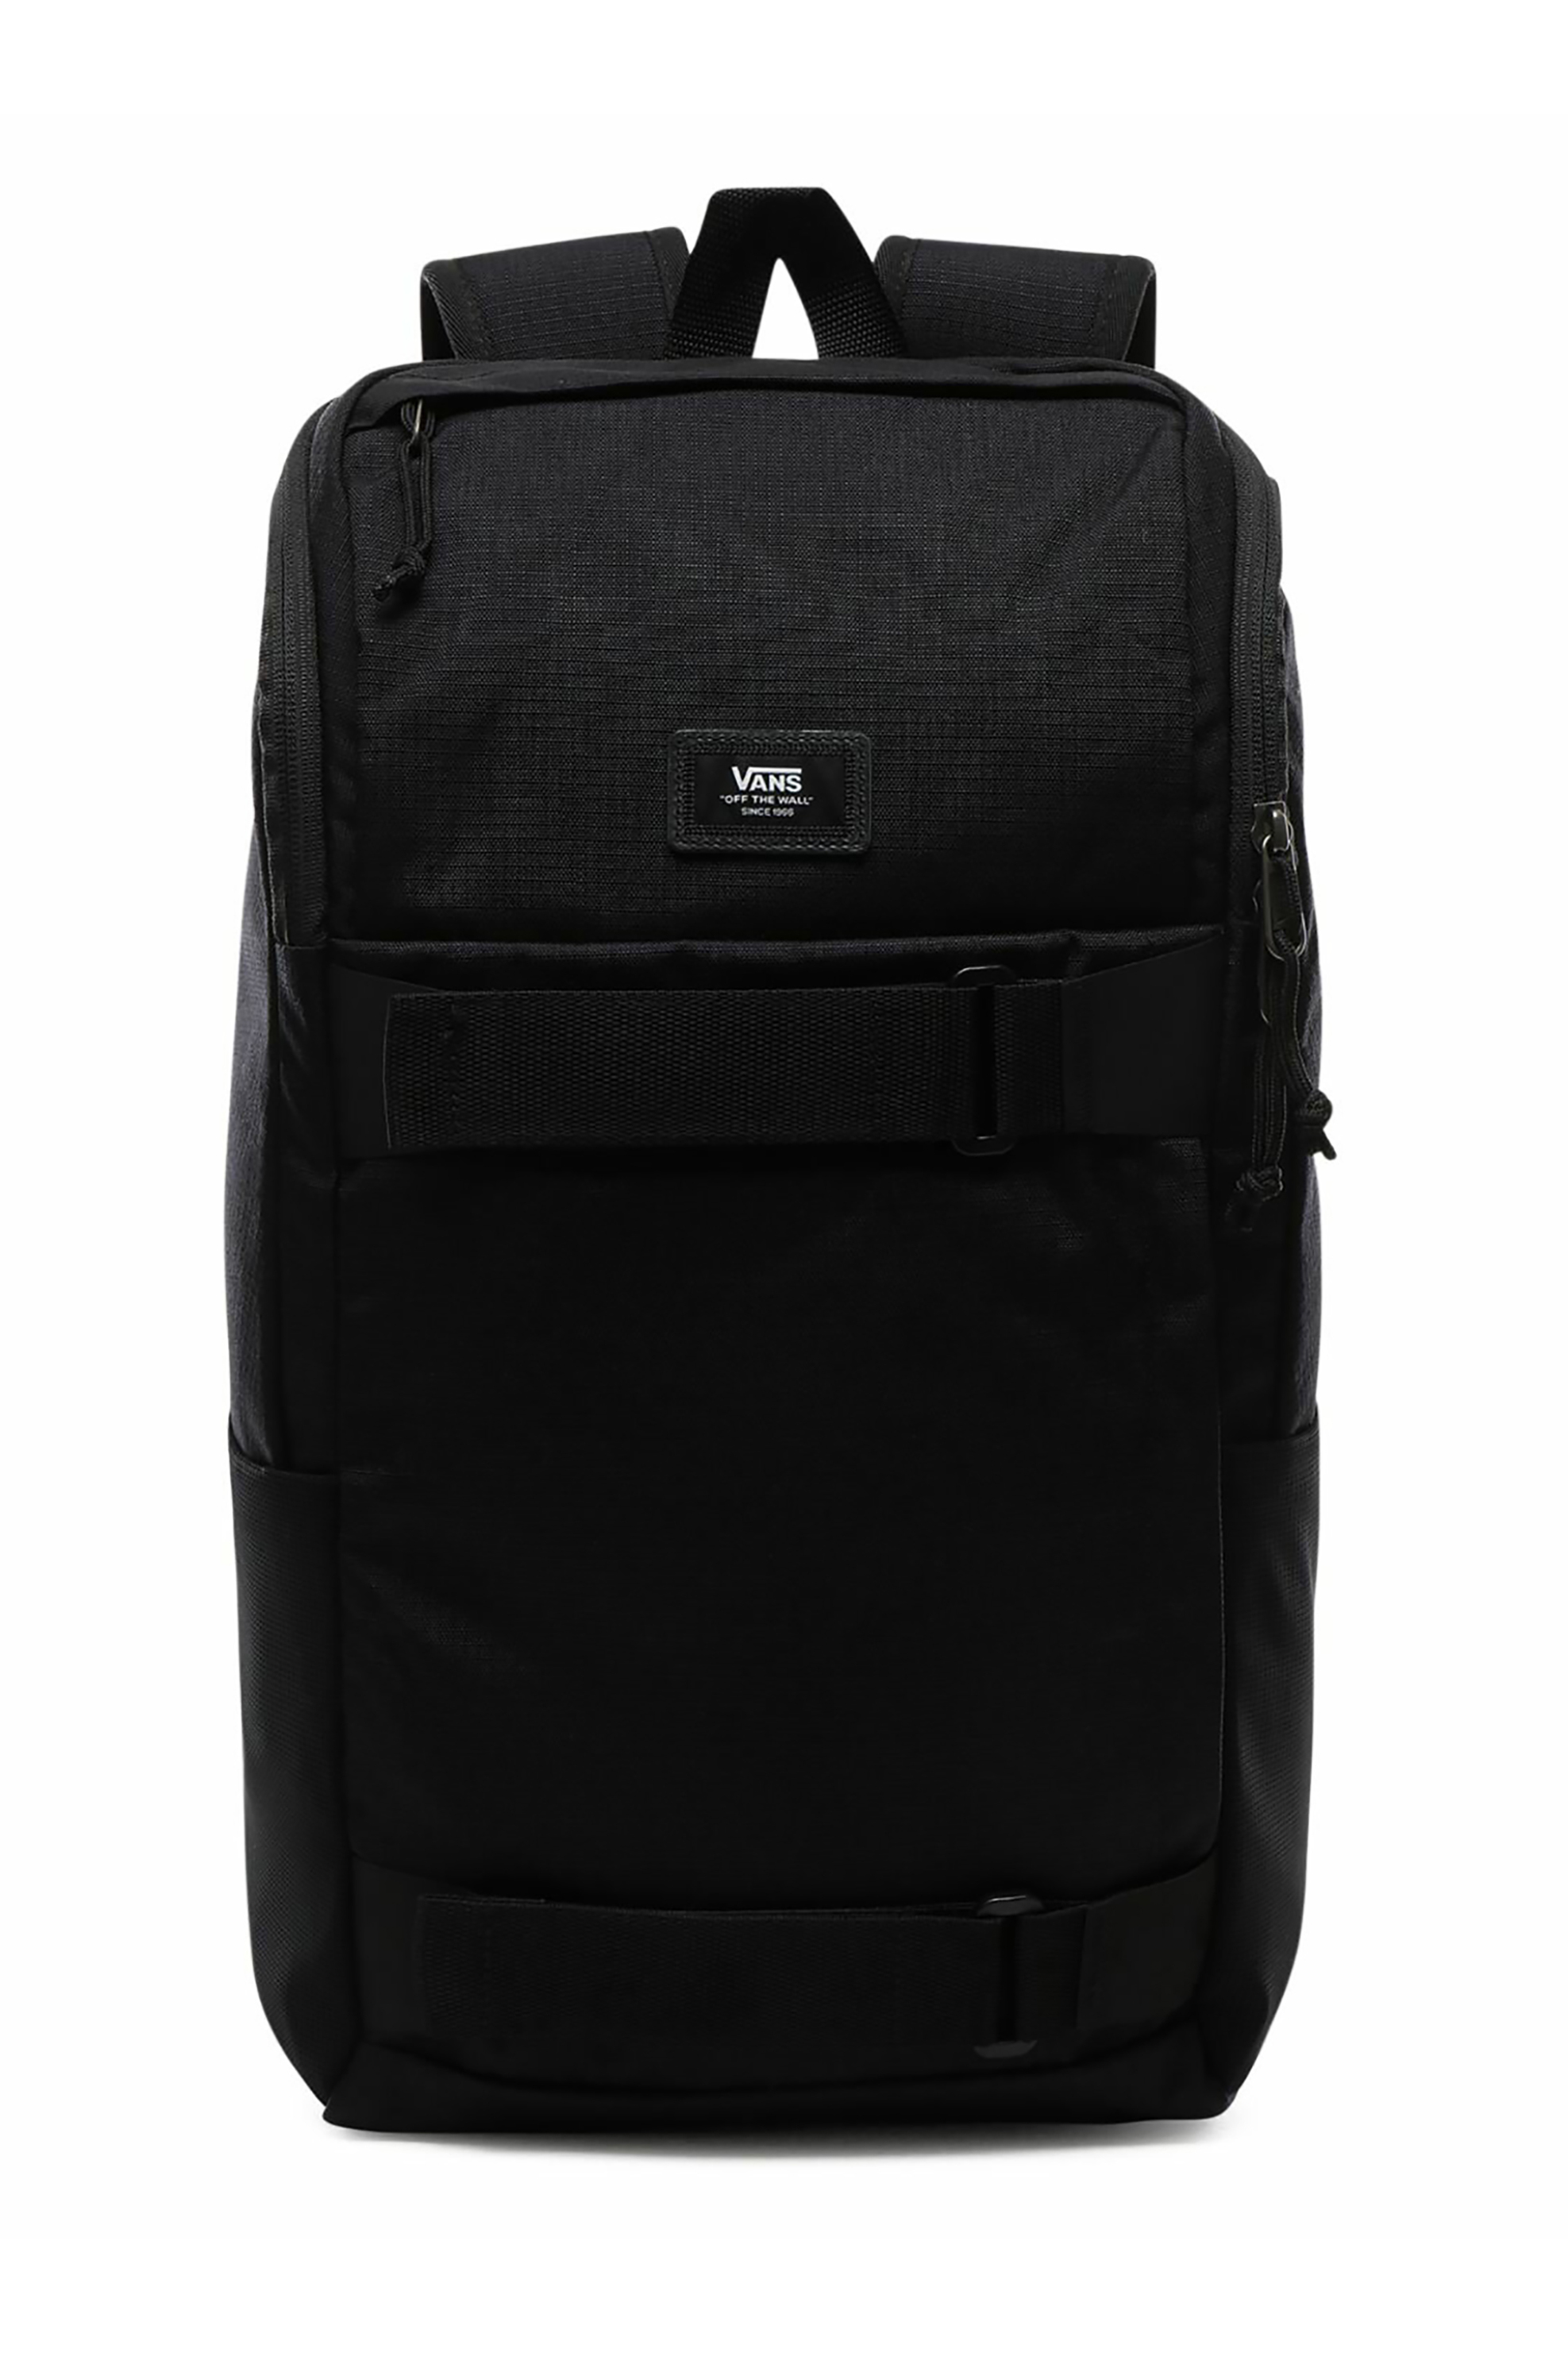 Ανδρική Μόδα > Ανδρικές Τσάντες > Ανδρικά Σακίδια & Backpacks Vans ανδρικό backpack μονόχρωμο με κεντημένο λογότυπο ''Οbstacle Skate Bag'' - VN0A3I696ZC1 Μαύρο